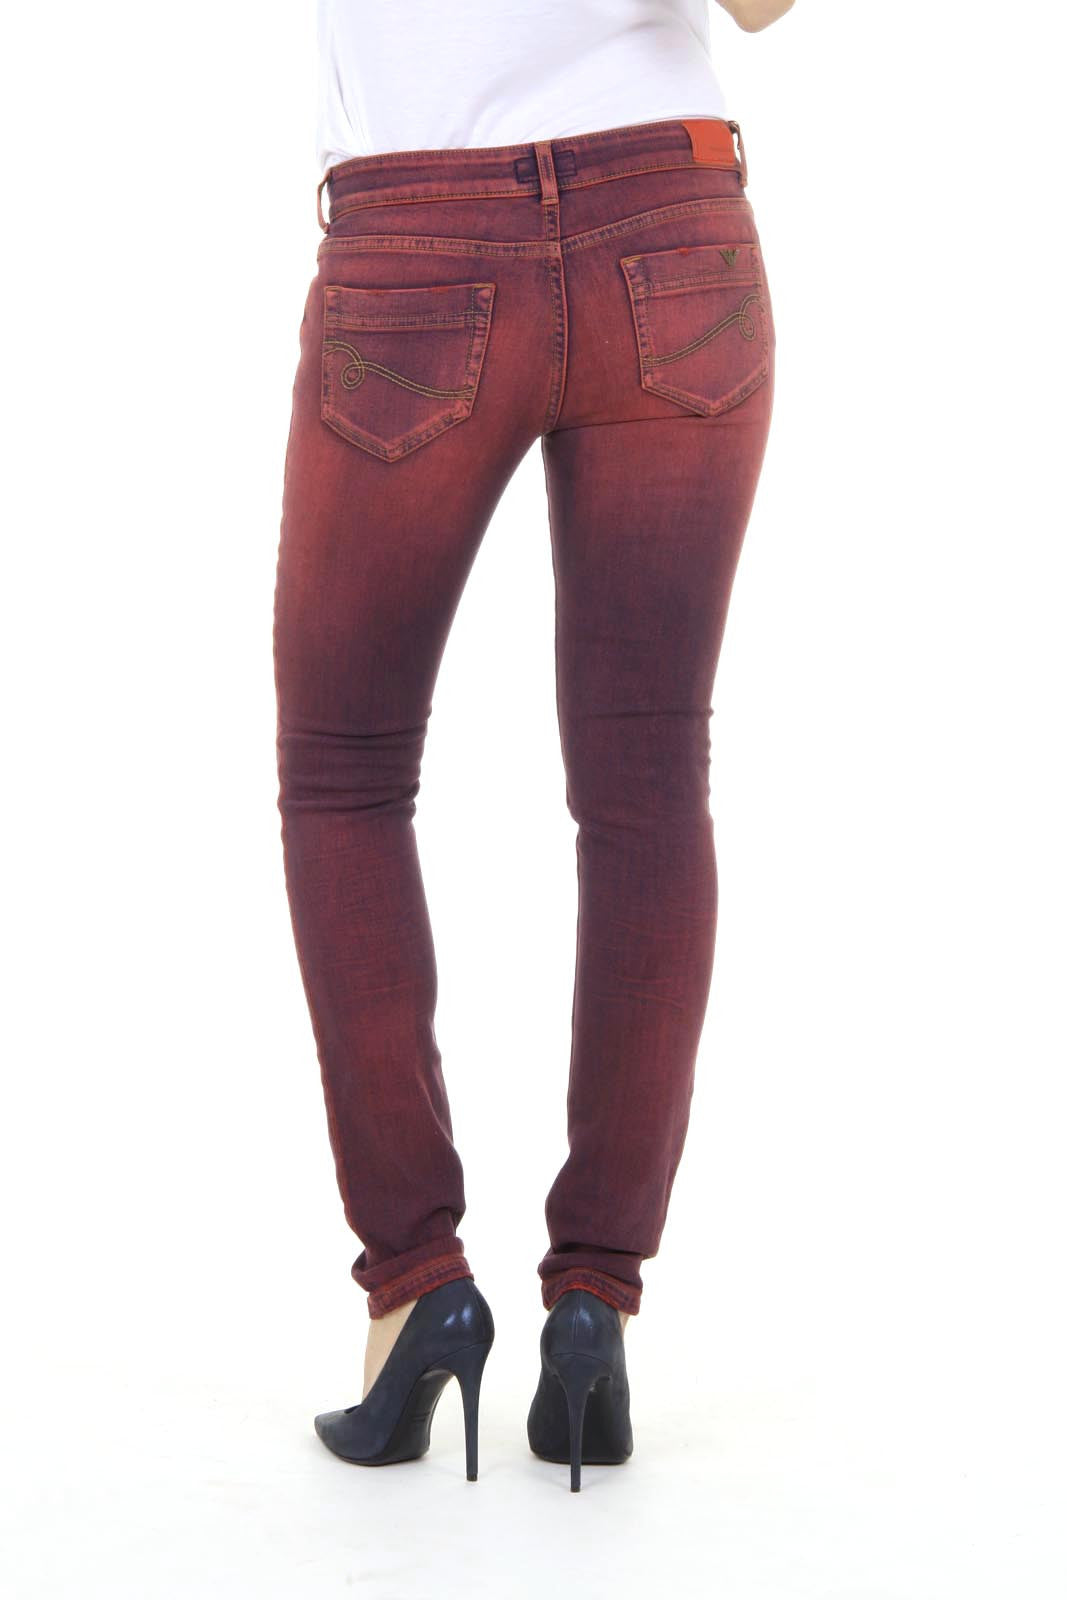 emporio armani ladies jeans